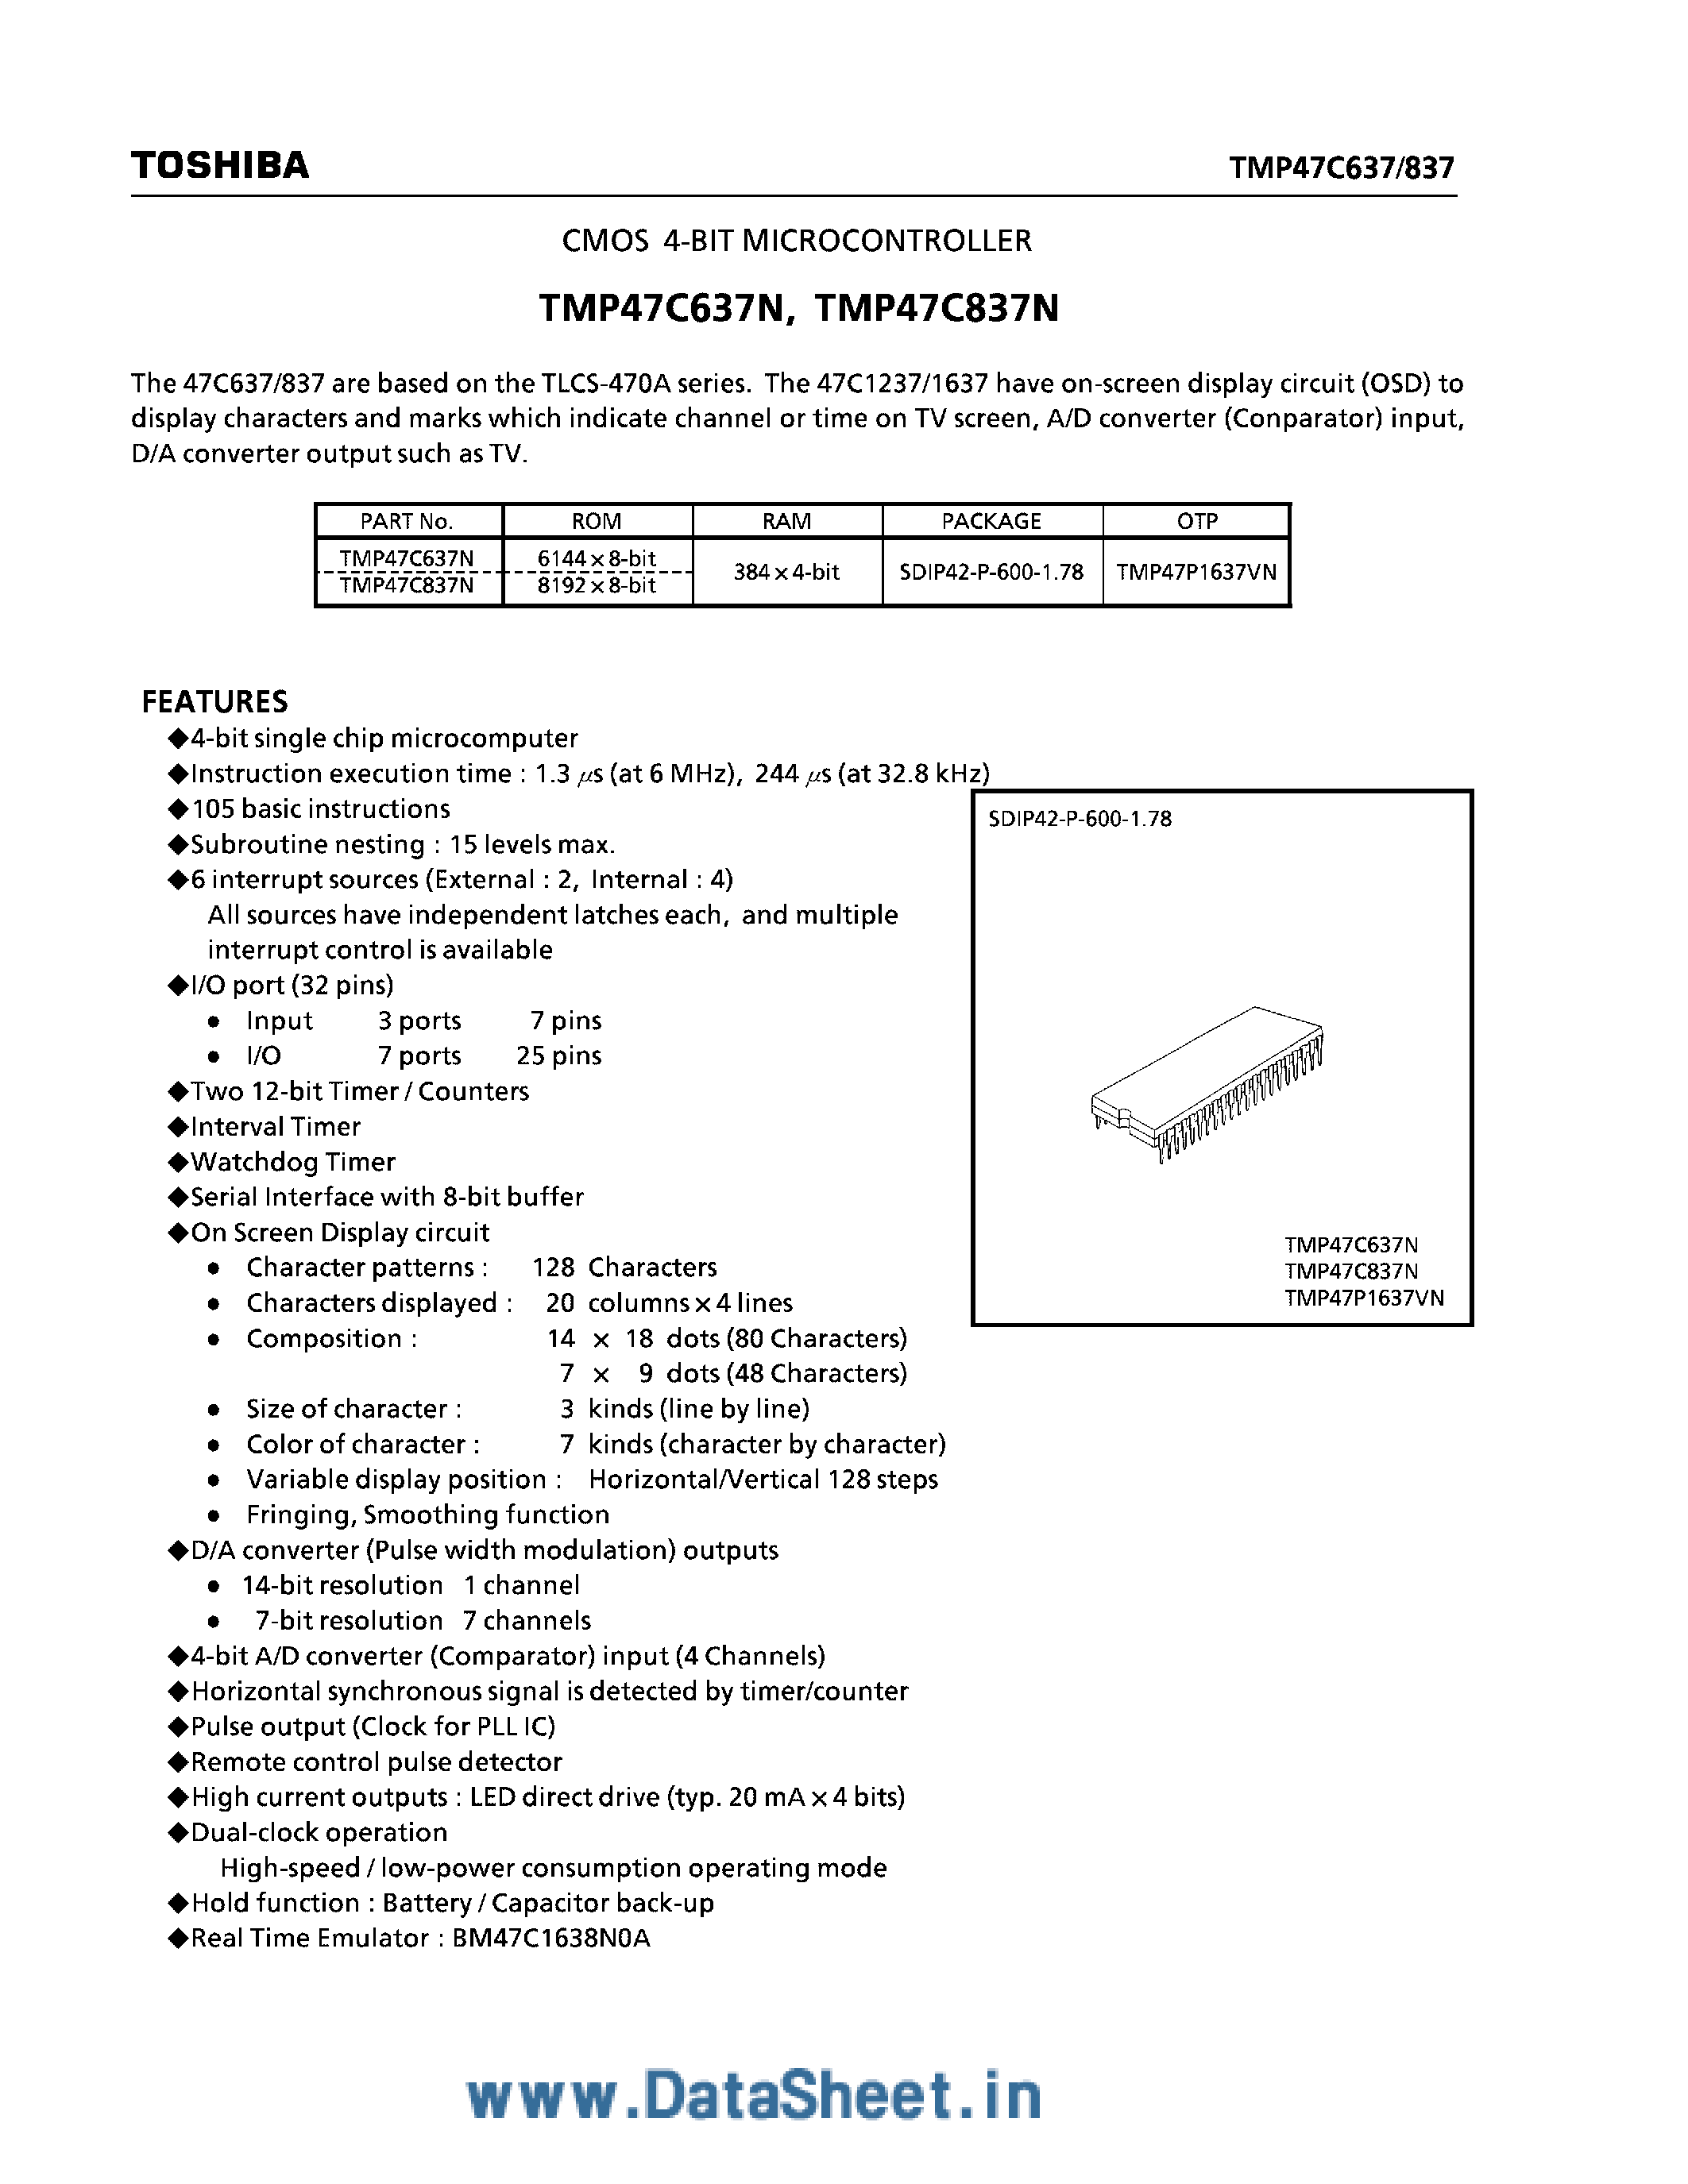 Datasheet TMP47C637N - (TMP47C637N / TMP47C837N) CMOS 4-Bit Microcontroller page 1